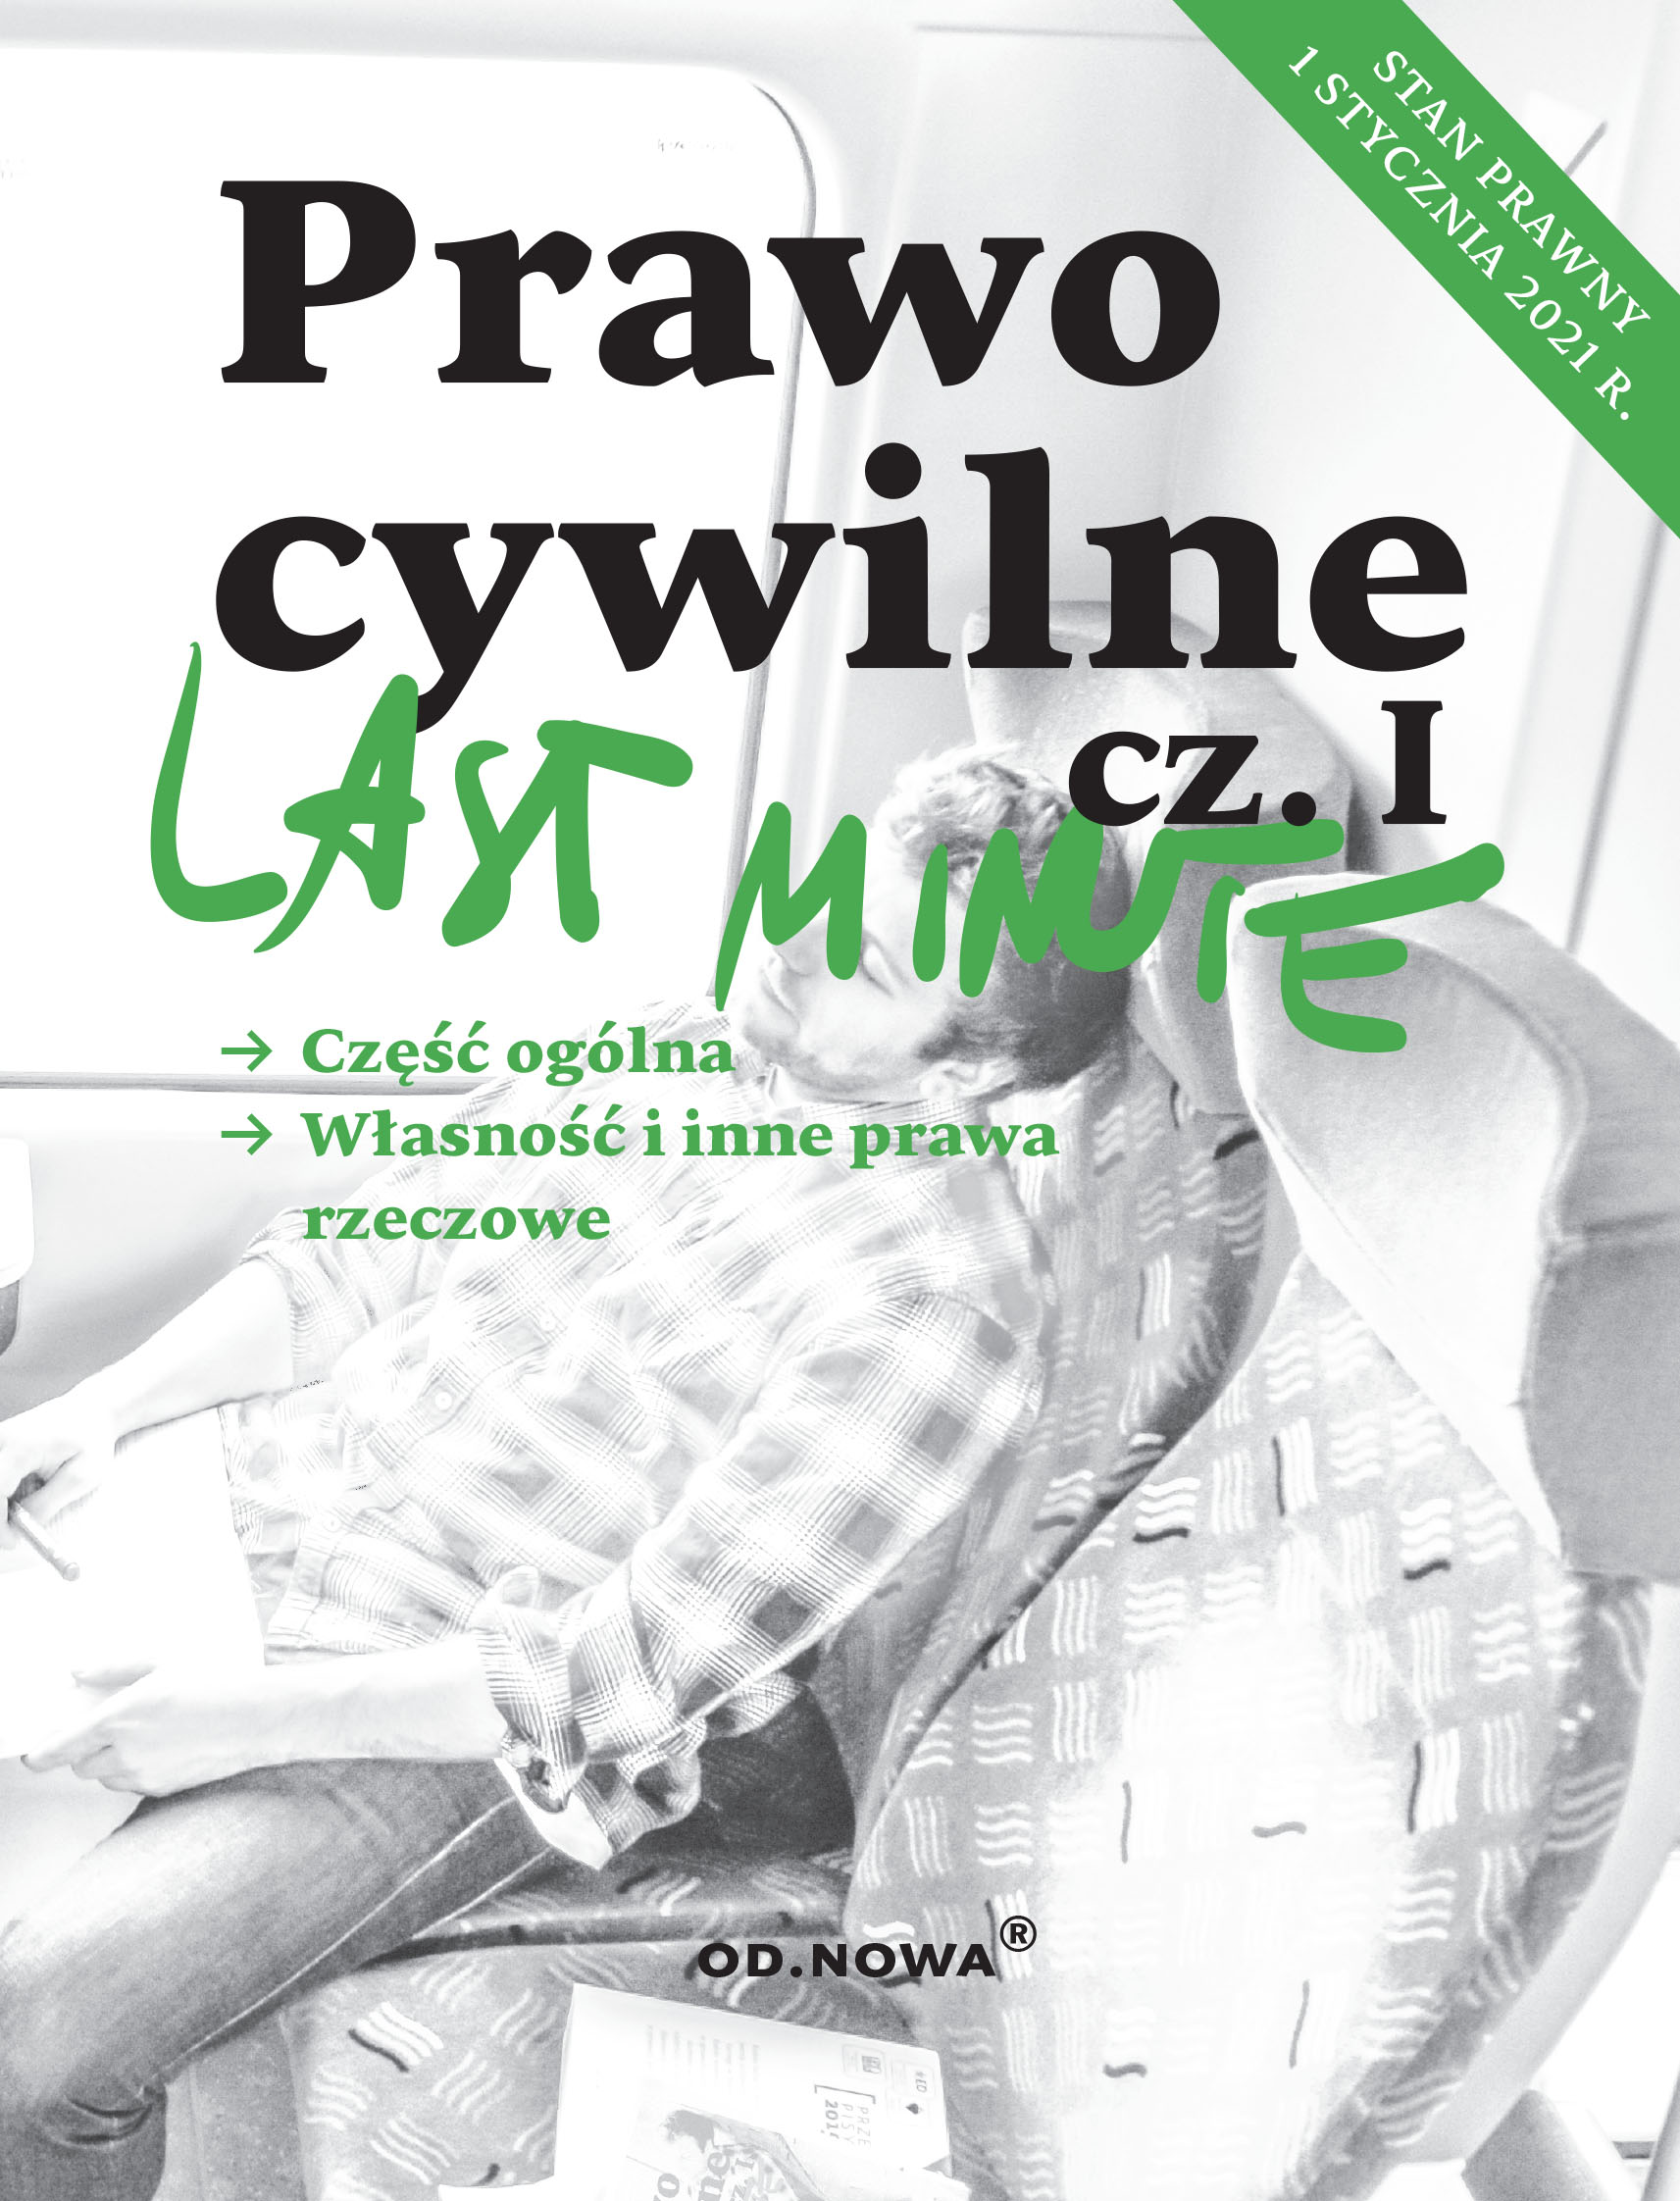 Last Minute Prawo Cywilne cz.I